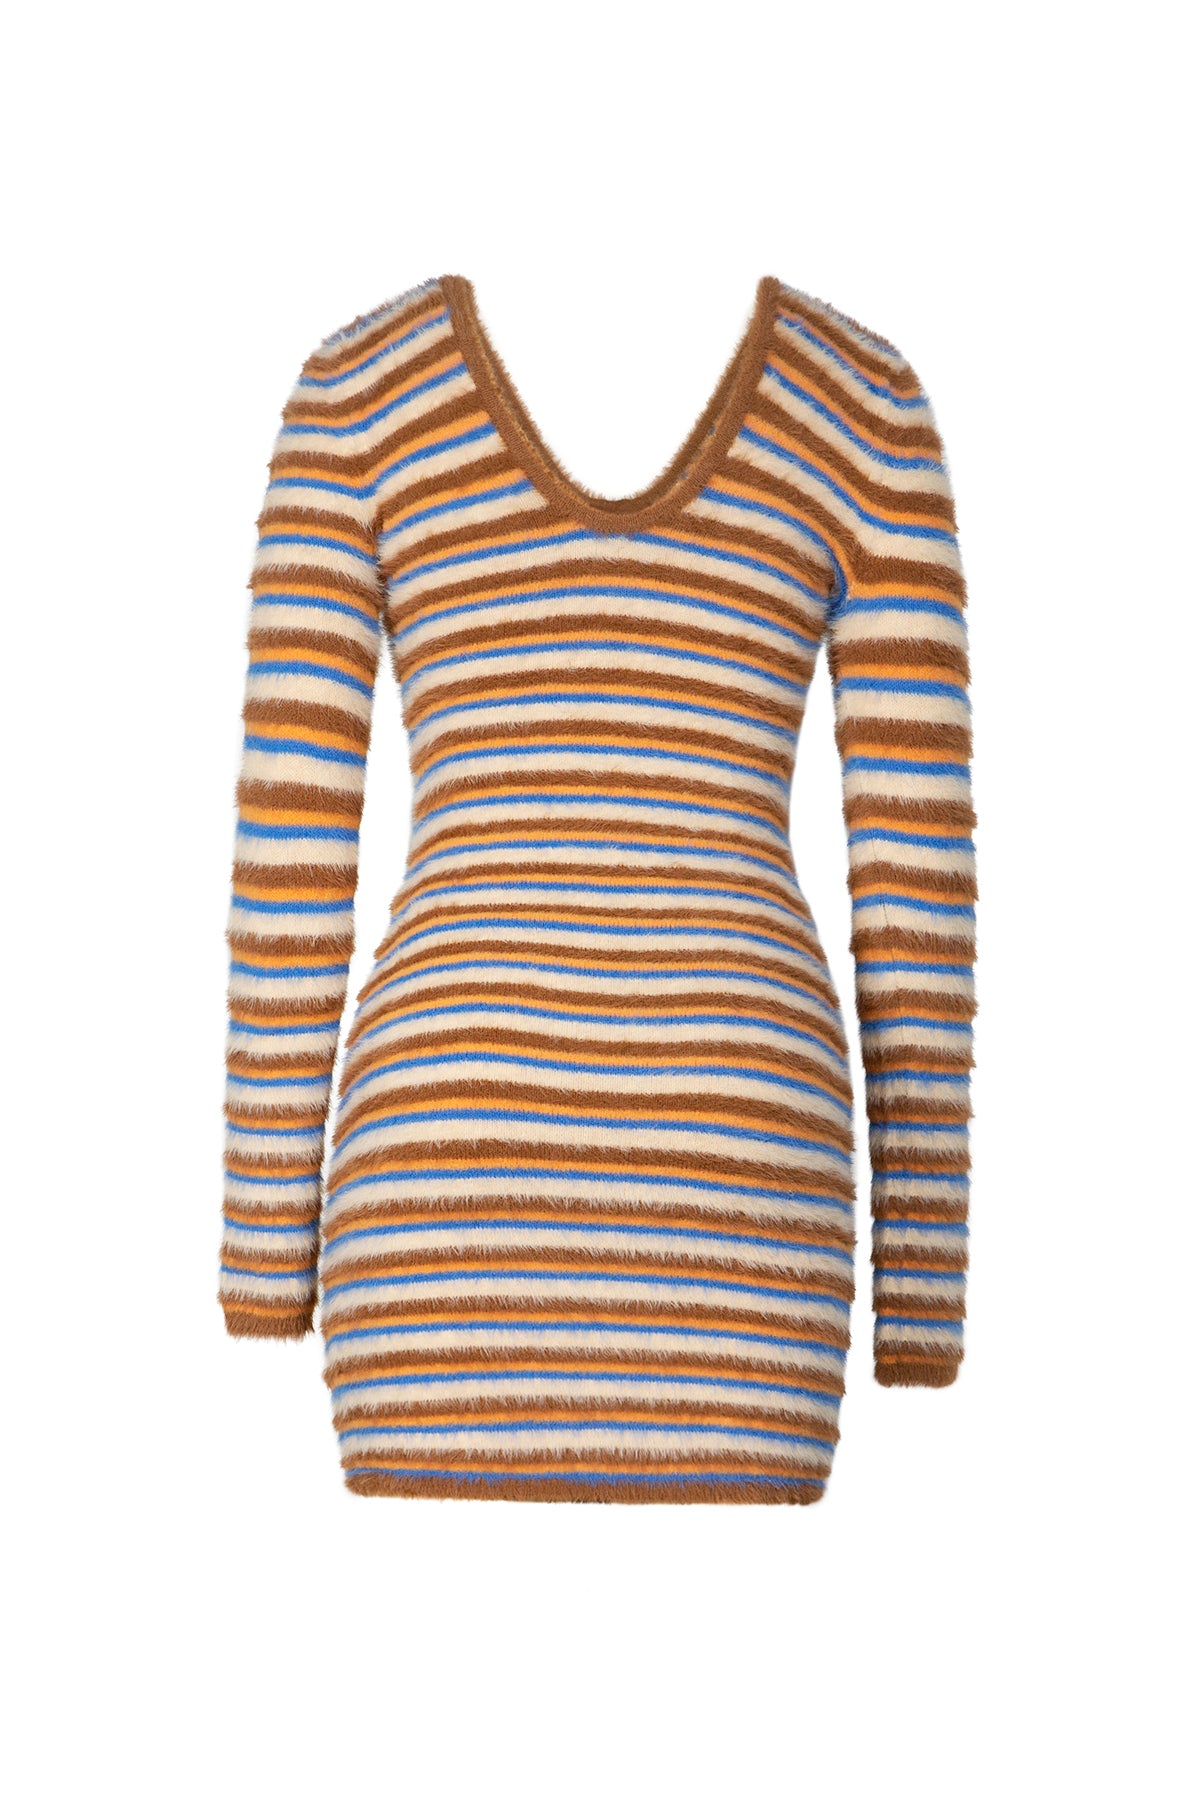 Estie Knit Dress - Coco Stripe